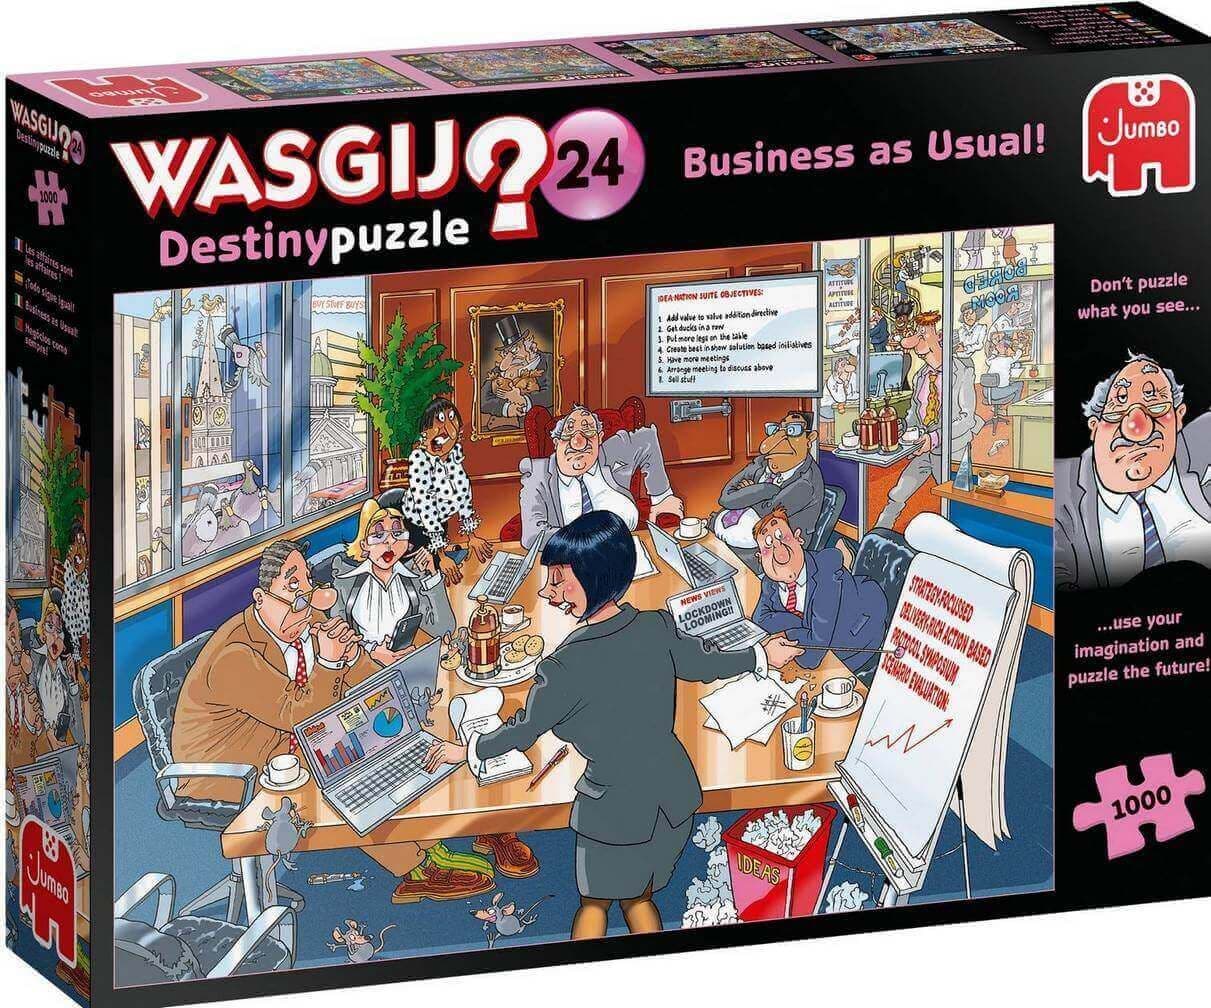 Wasgij Destiny 24 Business as Usual!  - 1000 Piece Jigsaw Puzzle